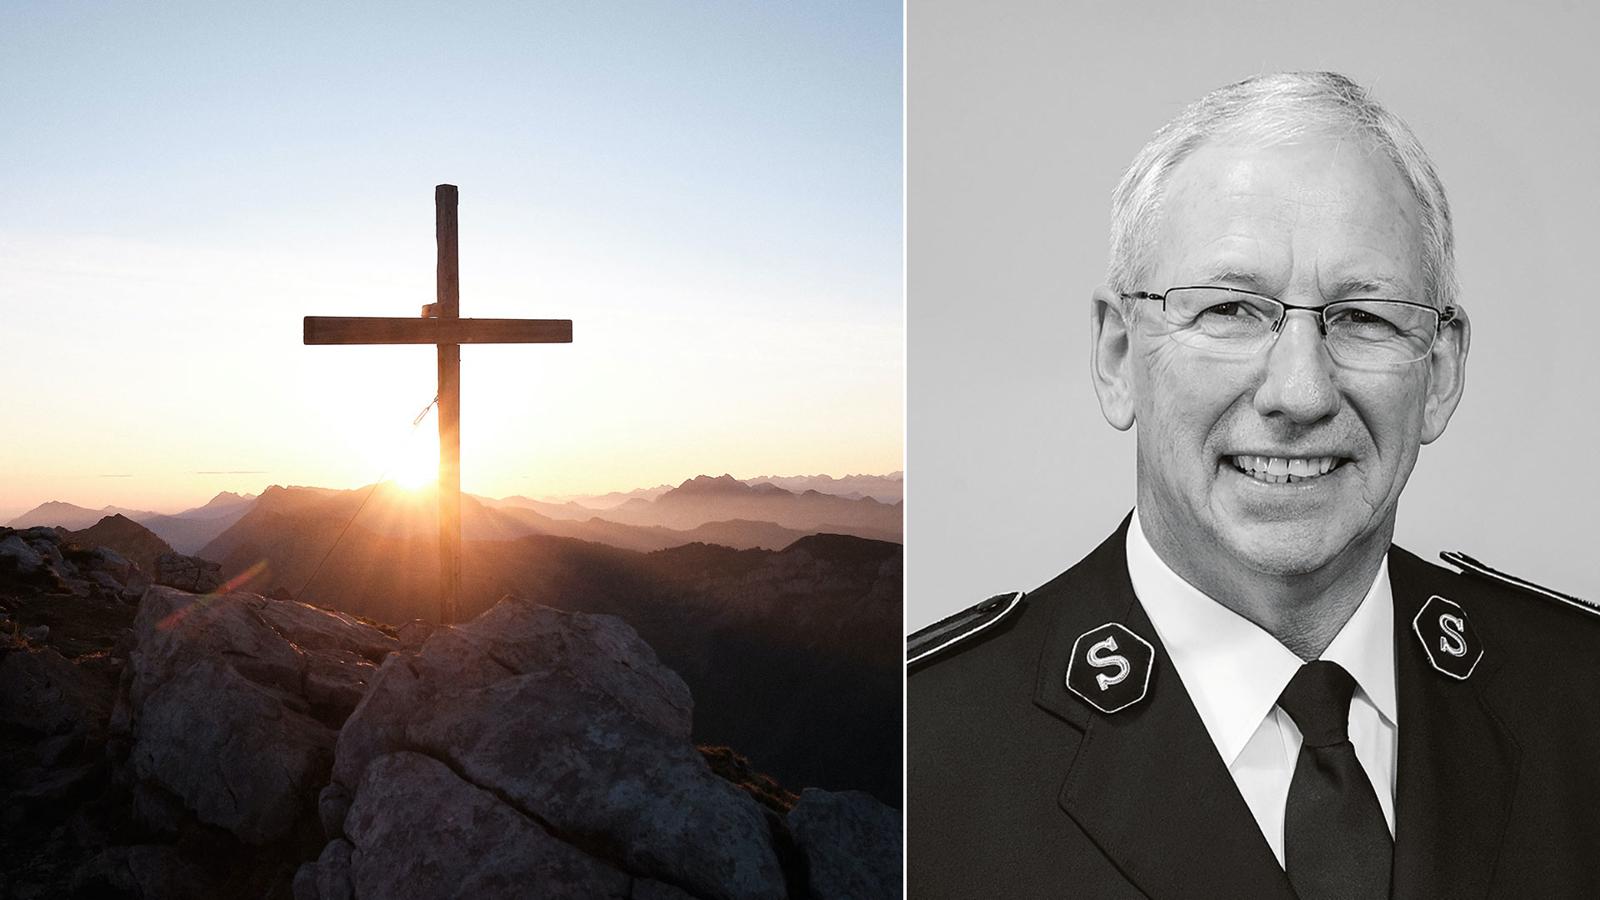 Till vänster: Ett kors som står uppe på ett berg. I bakgrunden lyser solstrålar, från en solnedgång, på korset. Till höger: Porträttbild av Brian Peddle.